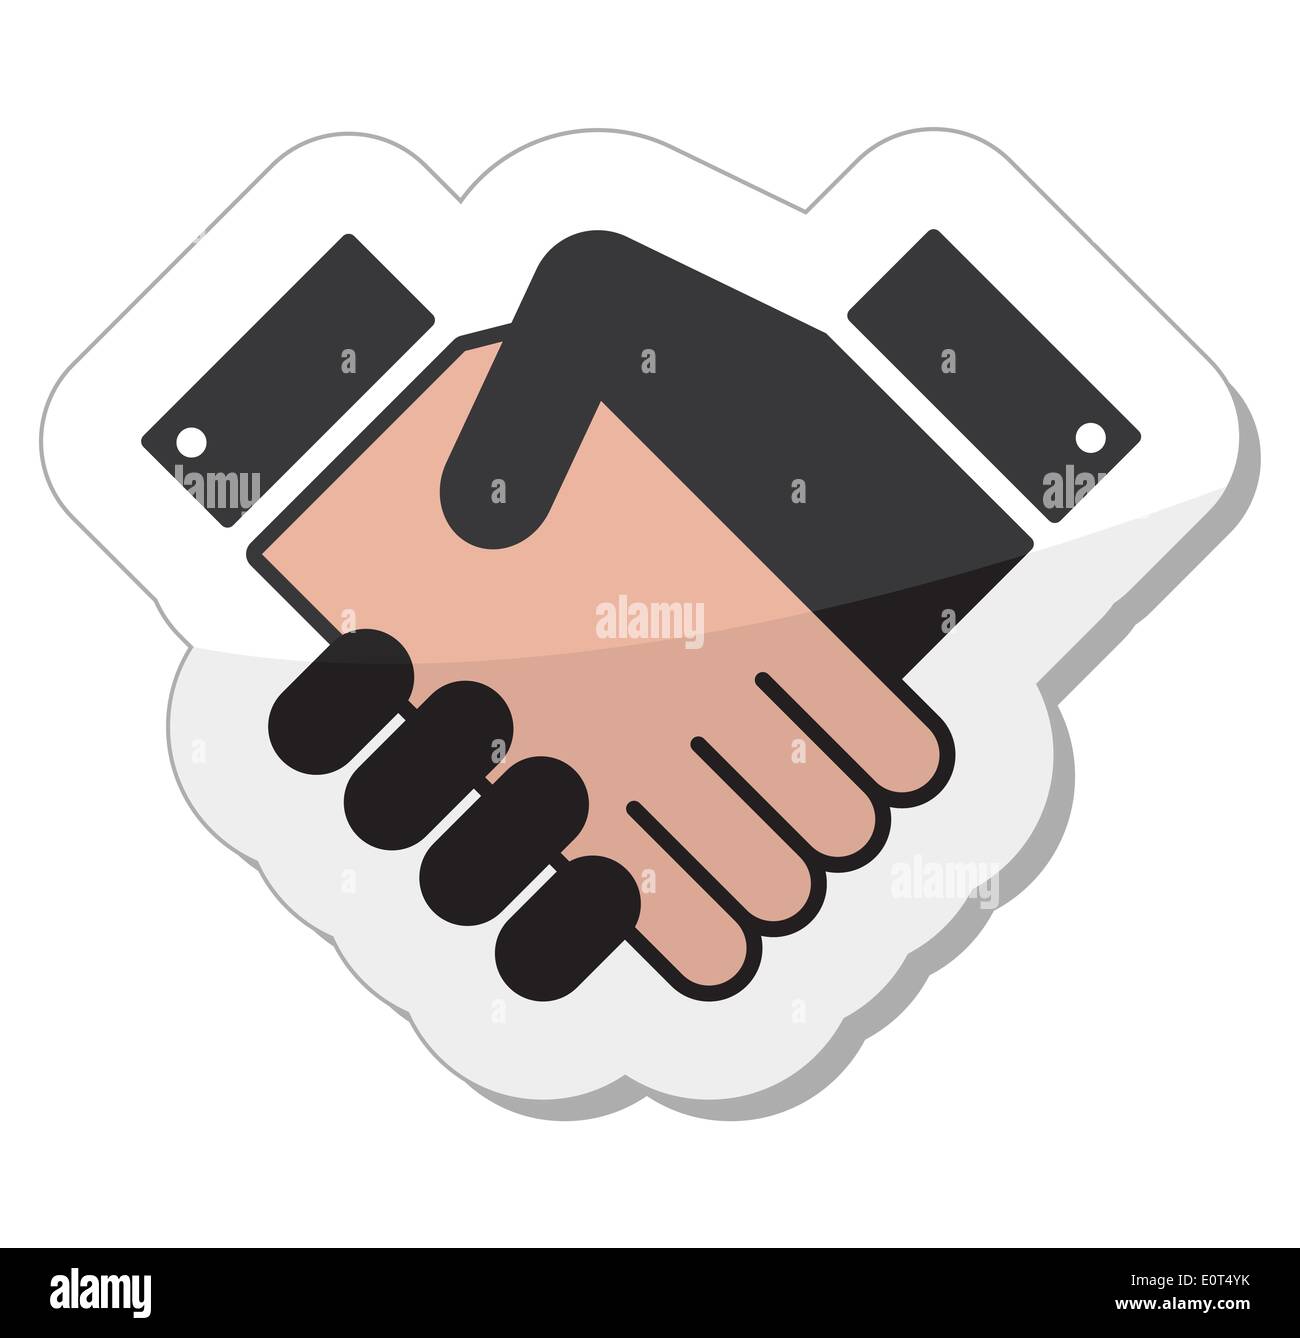 Vereinbarung-Handshake-Symbol - Label Stock Vektor